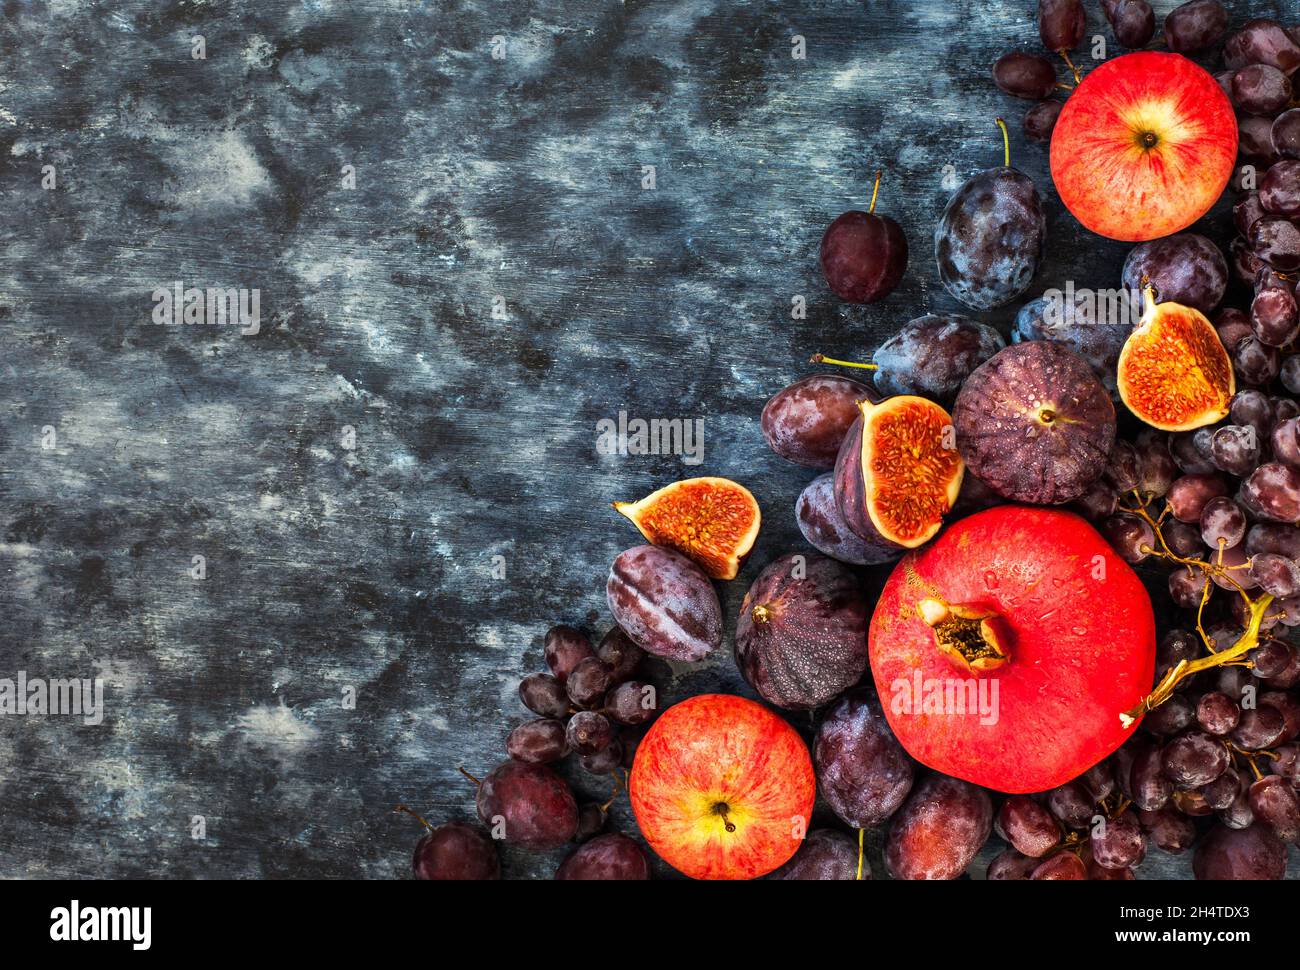 Fruits frais d'automne - figues, prunes, raisins et grenade, vue de dessus Banque D'Images